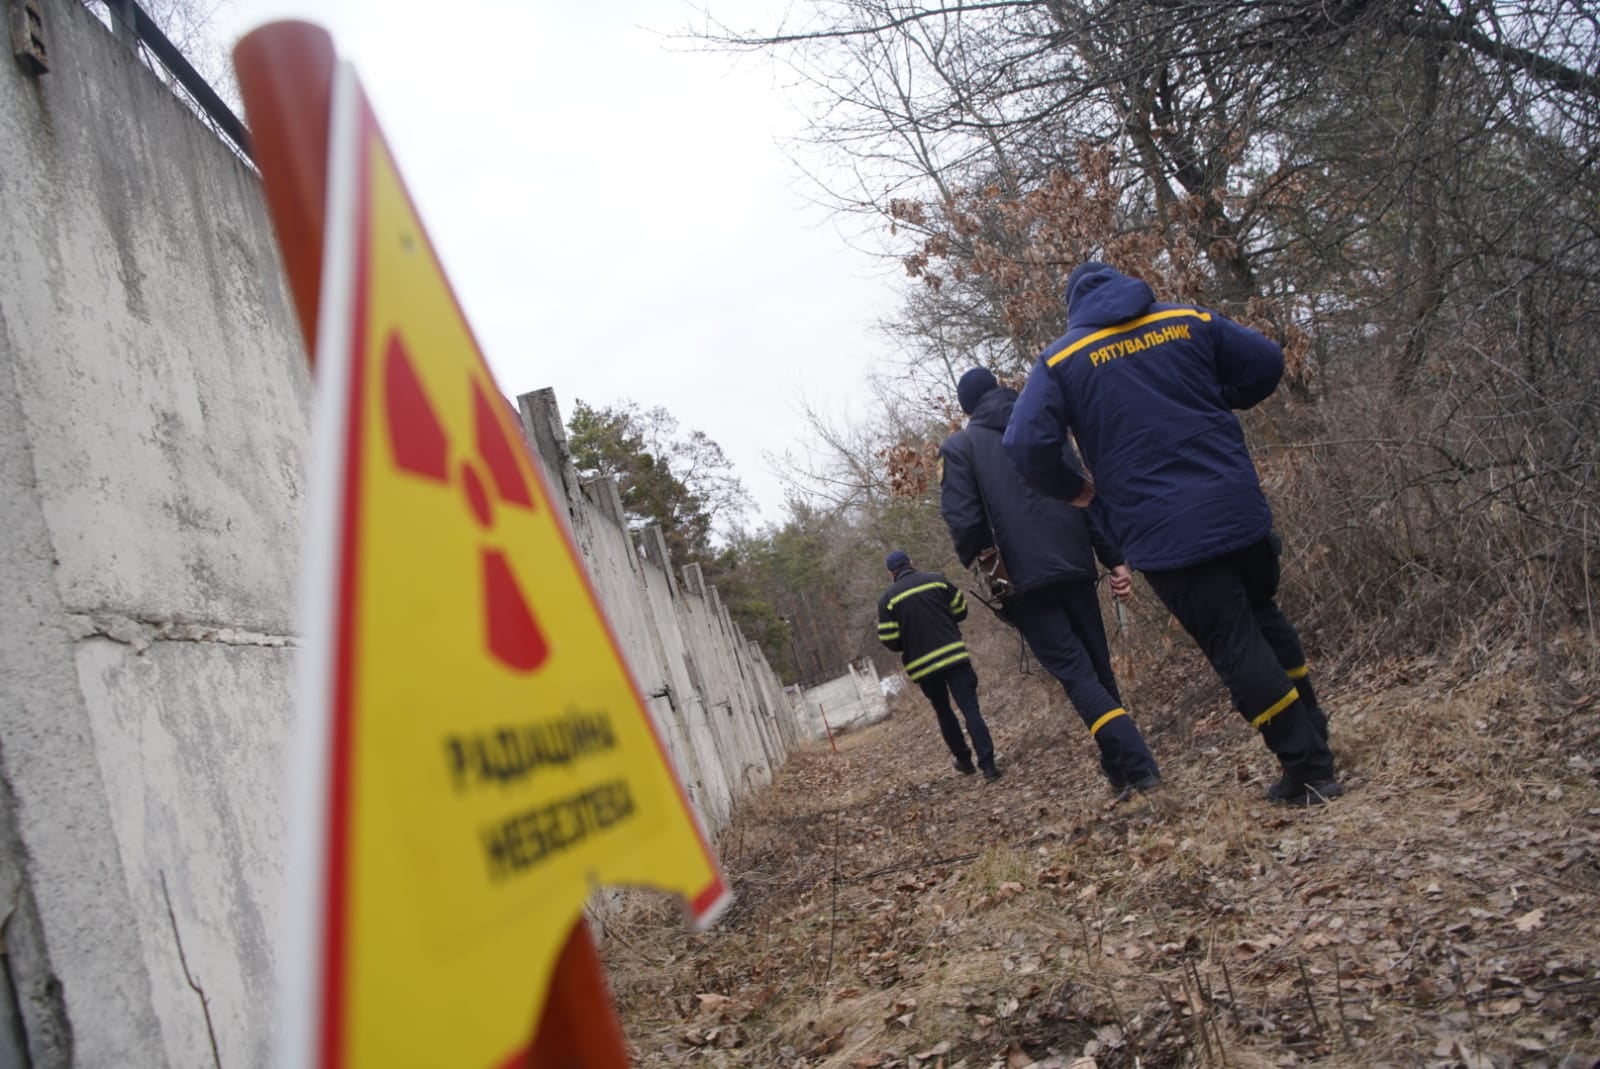 “Грязная бомба”: чем думают россияне, открывая огонь на территории АЭС?